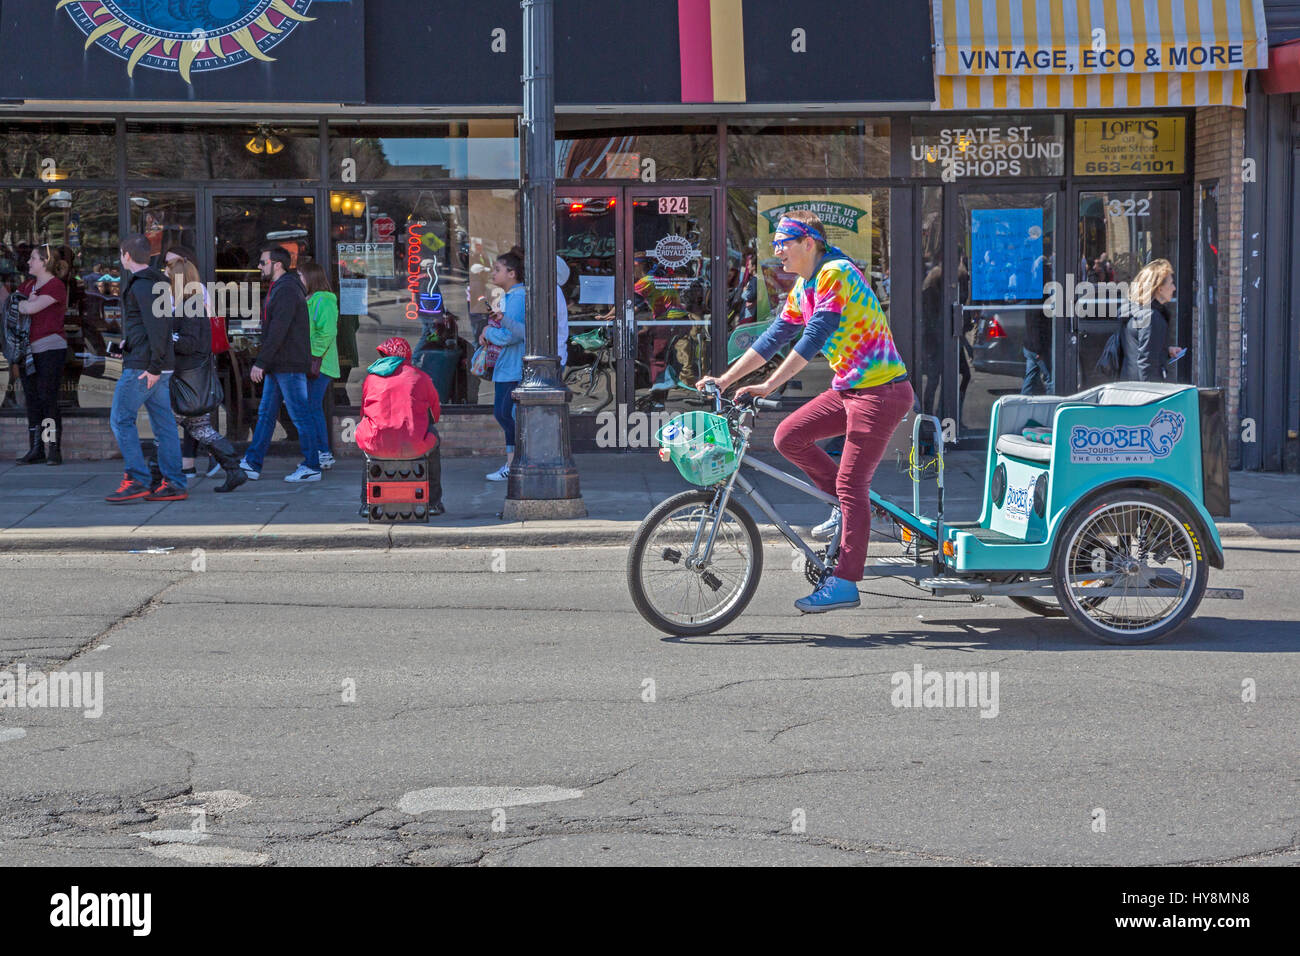 Ann Arbor, Michigan - Un pedicab driver cherche des passagers dans une rue commerçante animée près de l'Université du Michigan. Banque D'Images